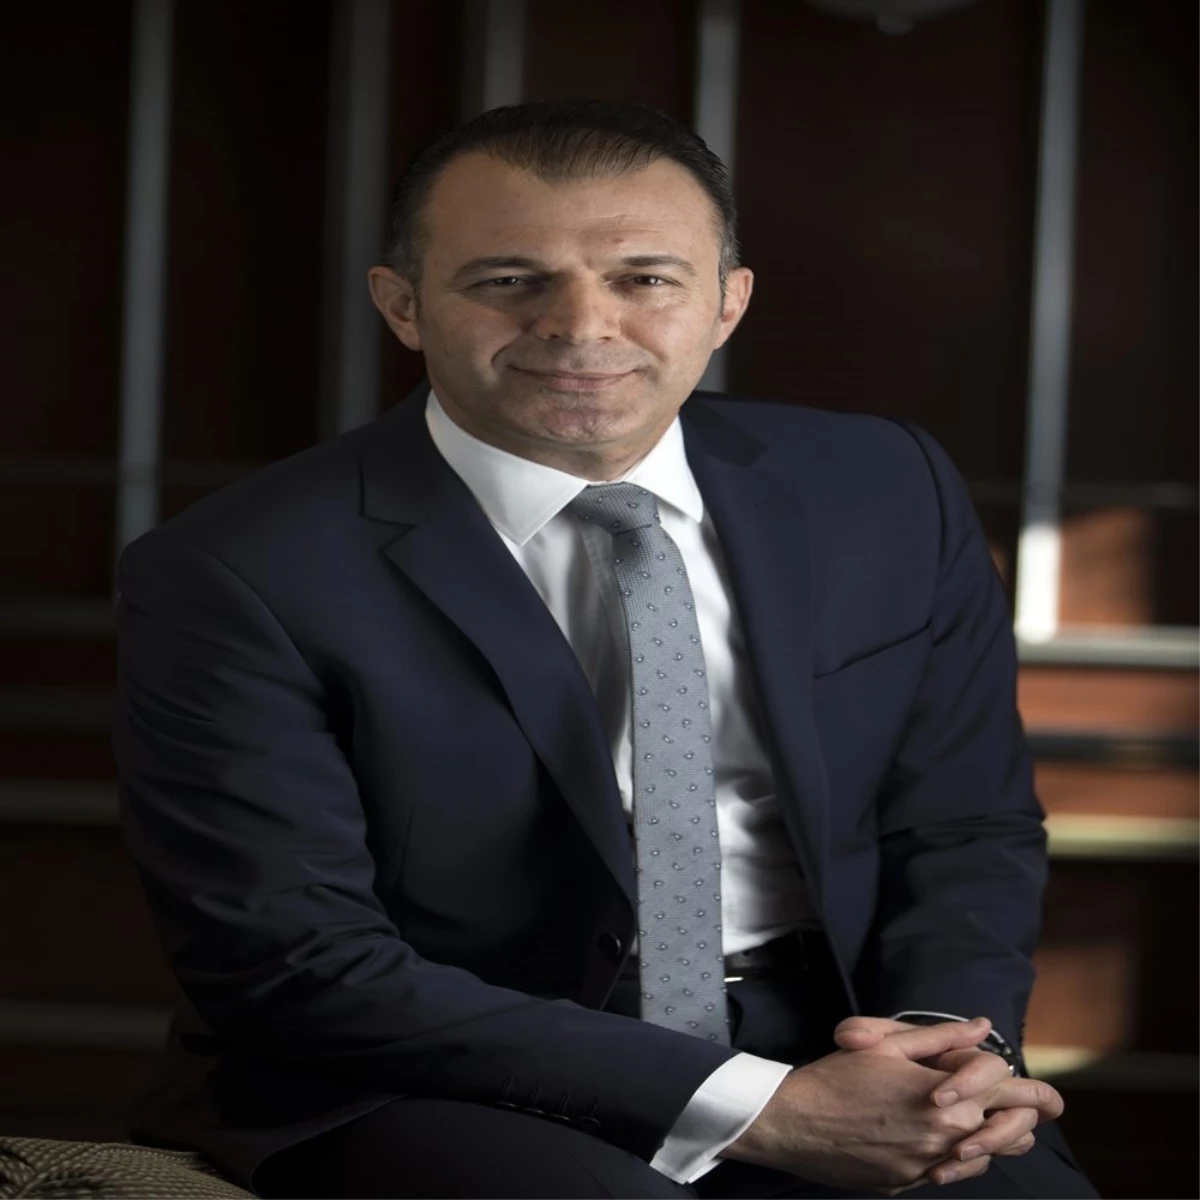 Türk Telekom Teknoloji Genel Müdür Yardımcısı Yusuf Kıraç: "Her türlü senaryoya hazırlıklıyız"